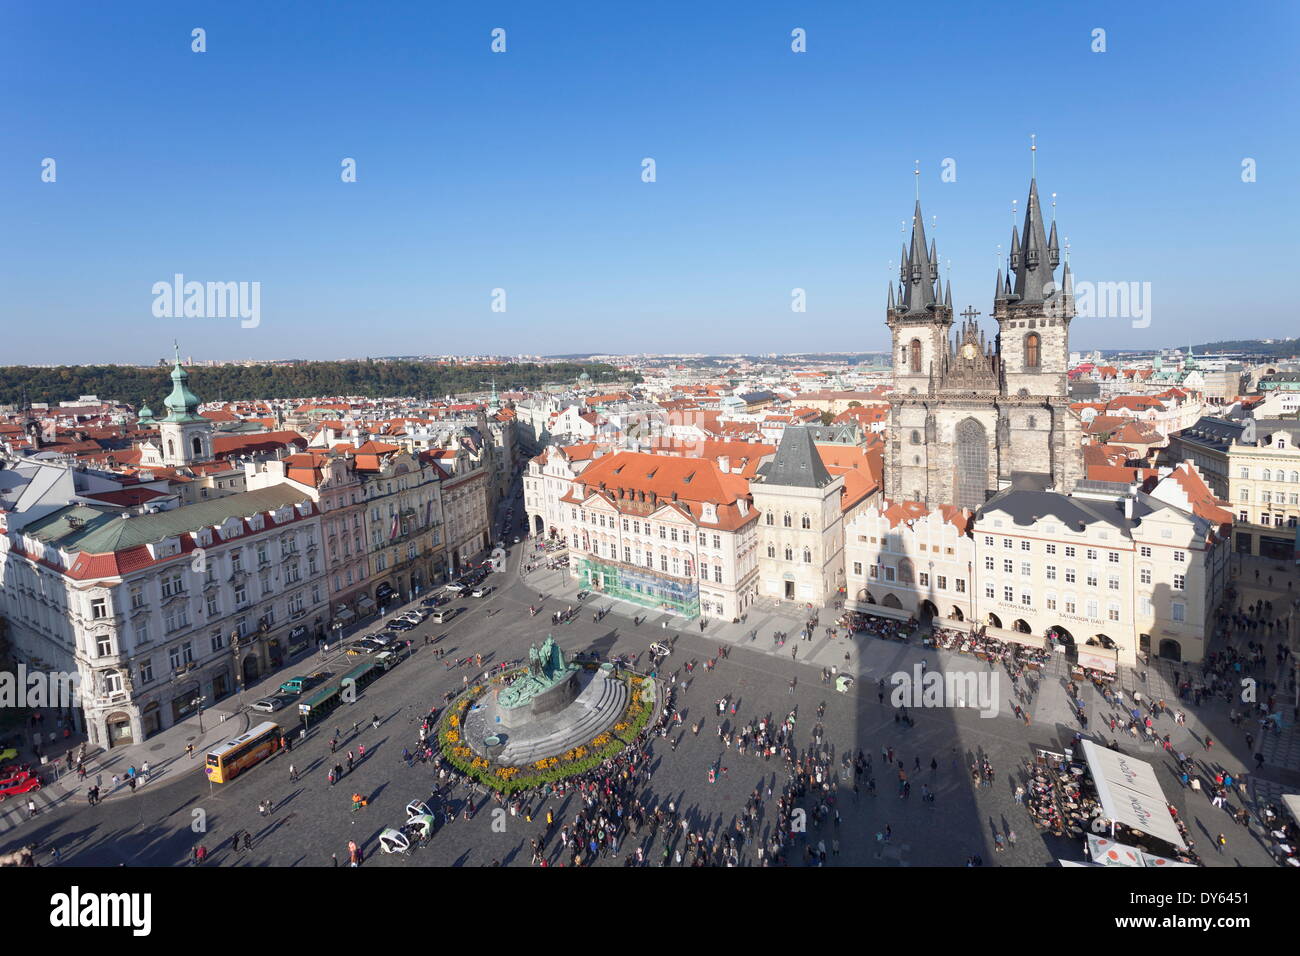 Vue sur la place de la vieille ville avec la cathédrale de Tyn, Jan Hus Monument et ses cafés de rue, Prague, la Bohême, République Tchèque Banque D'Images